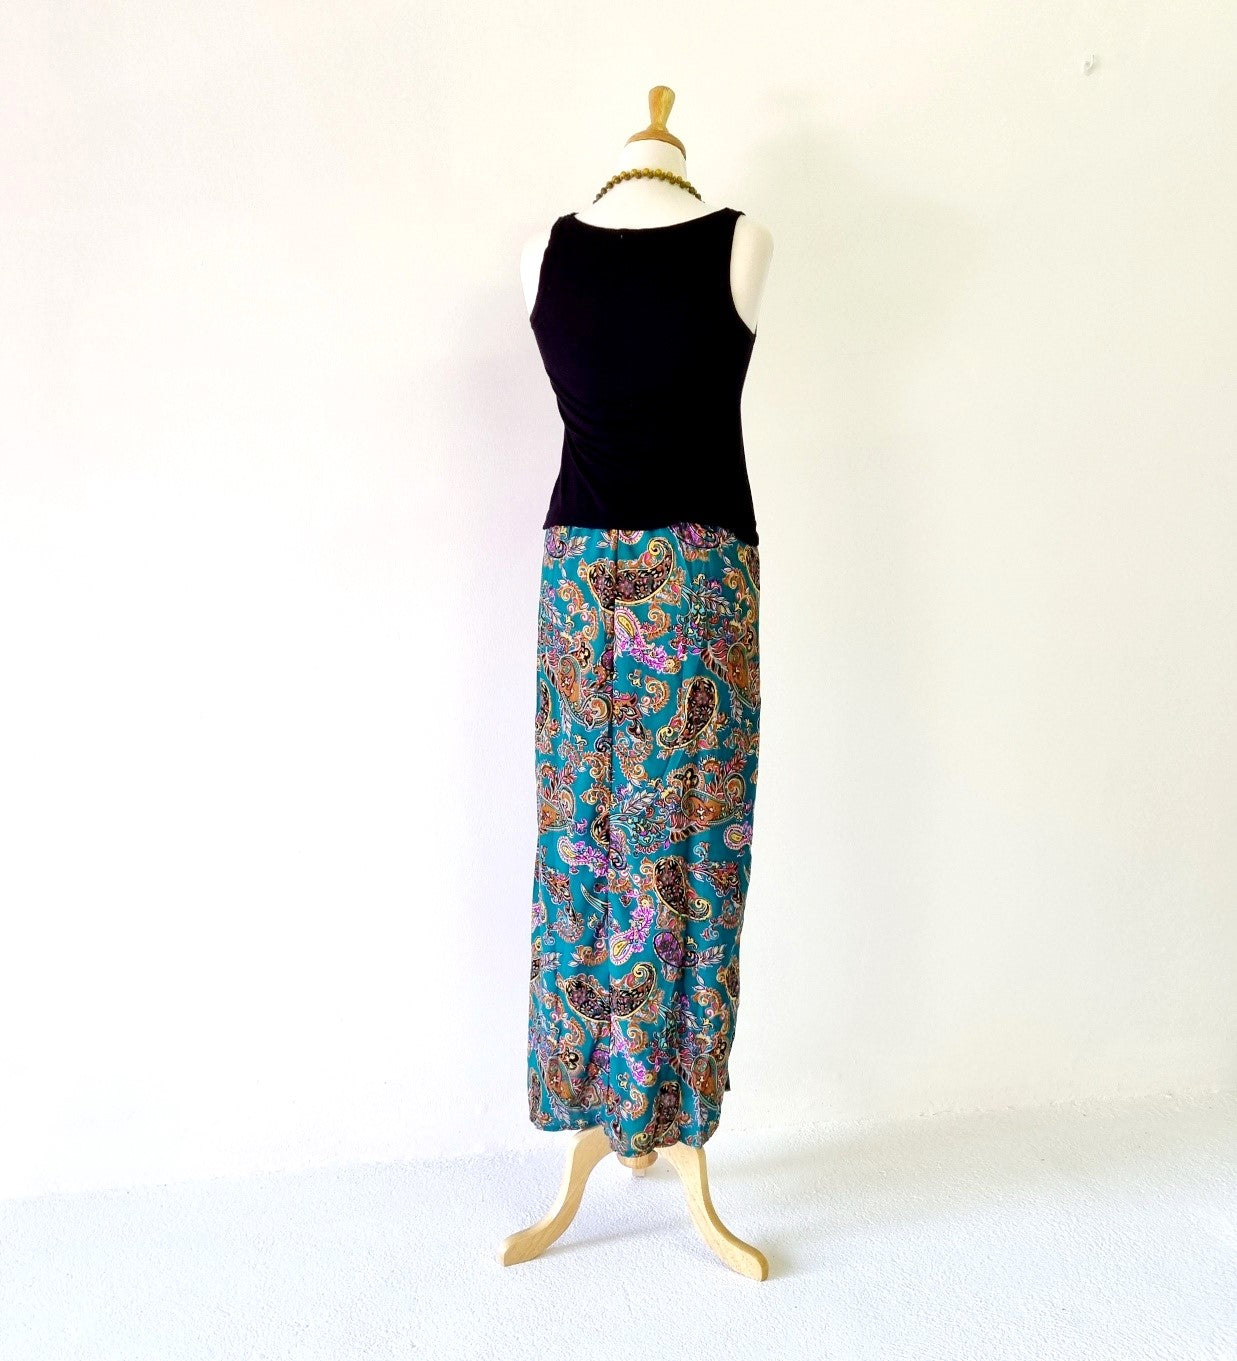 No Tag - Green & pink paisley patterned long skirt